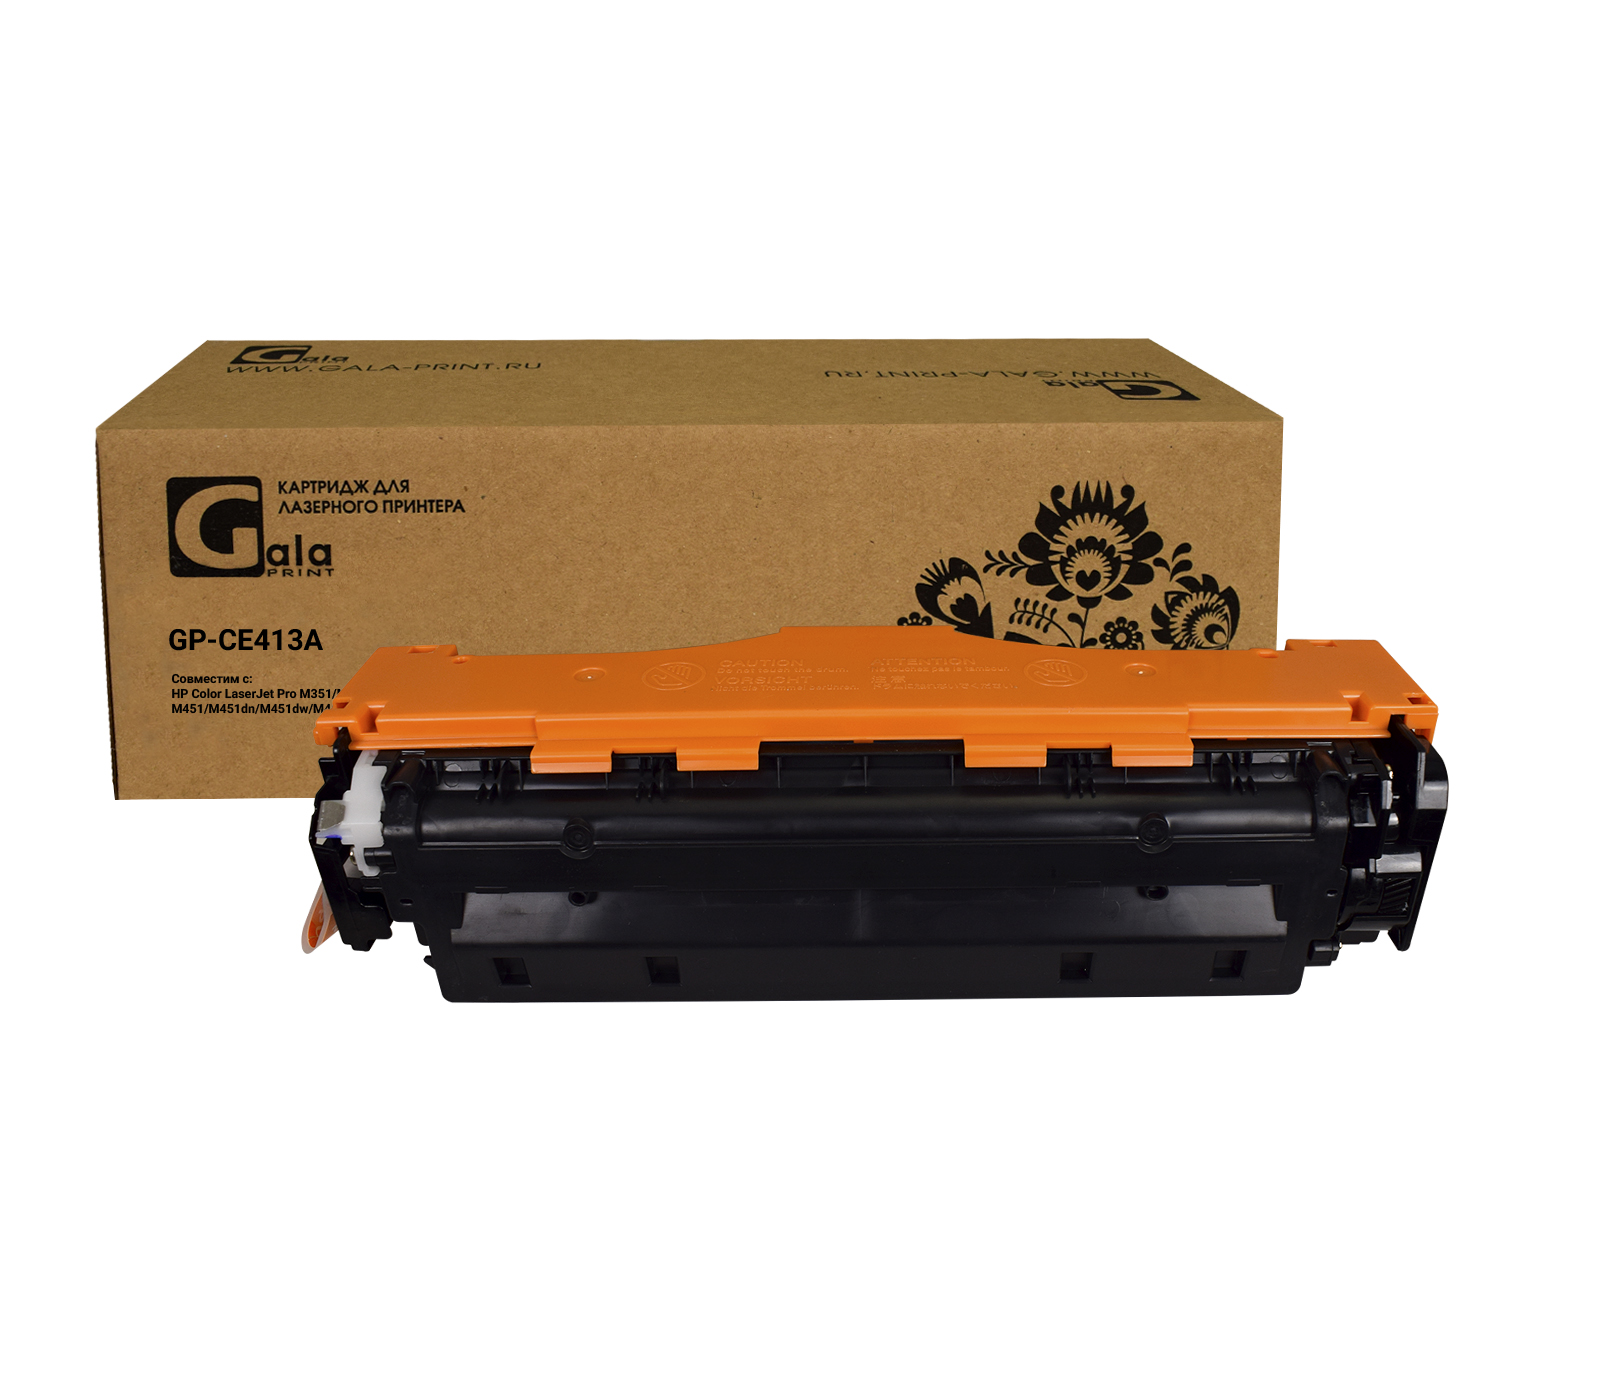 Картридж GP-CE413A (№305A)  для принтеров HP Color LaserJet Pro M351/M451dn/M451dw/M451nw/MFP/M475dw/M475DN Magenta 2600 копий GalaPrint